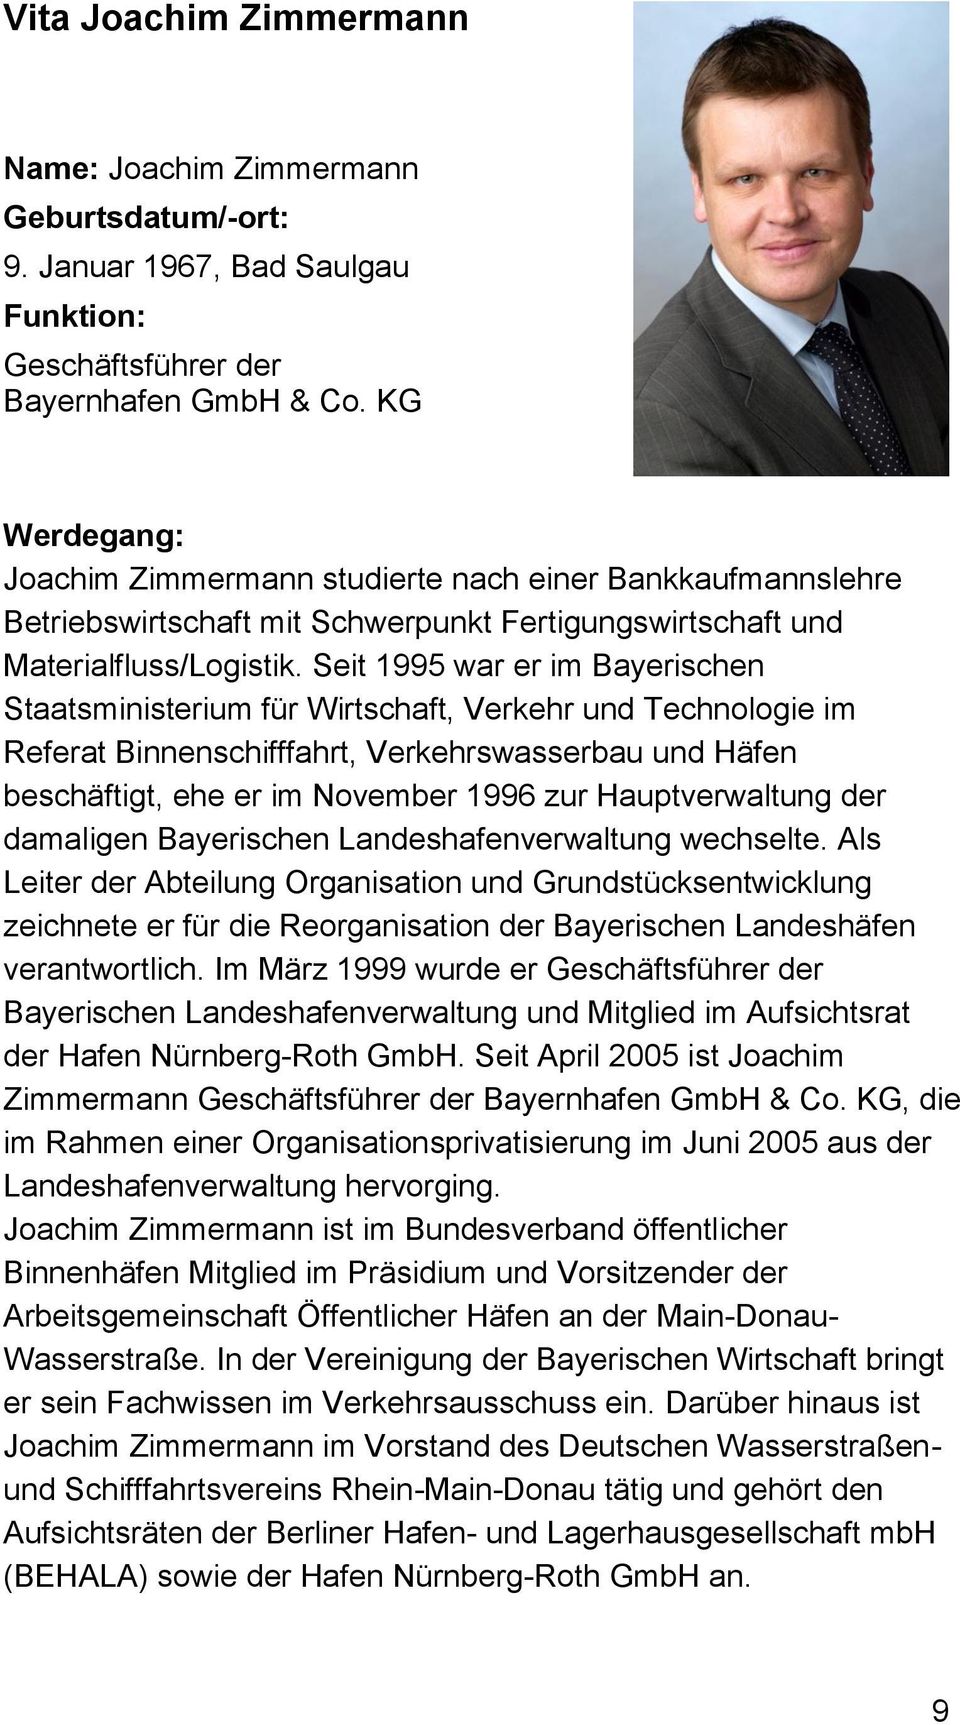 Seit 1995 war er im Bayerischen Staatsministerium für Wirtschaft, Verkehr und Technologie im Referat Binnenschifffahrt, Verkehrswasserbau und Häfen beschäftigt, ehe er im November 1996 zur